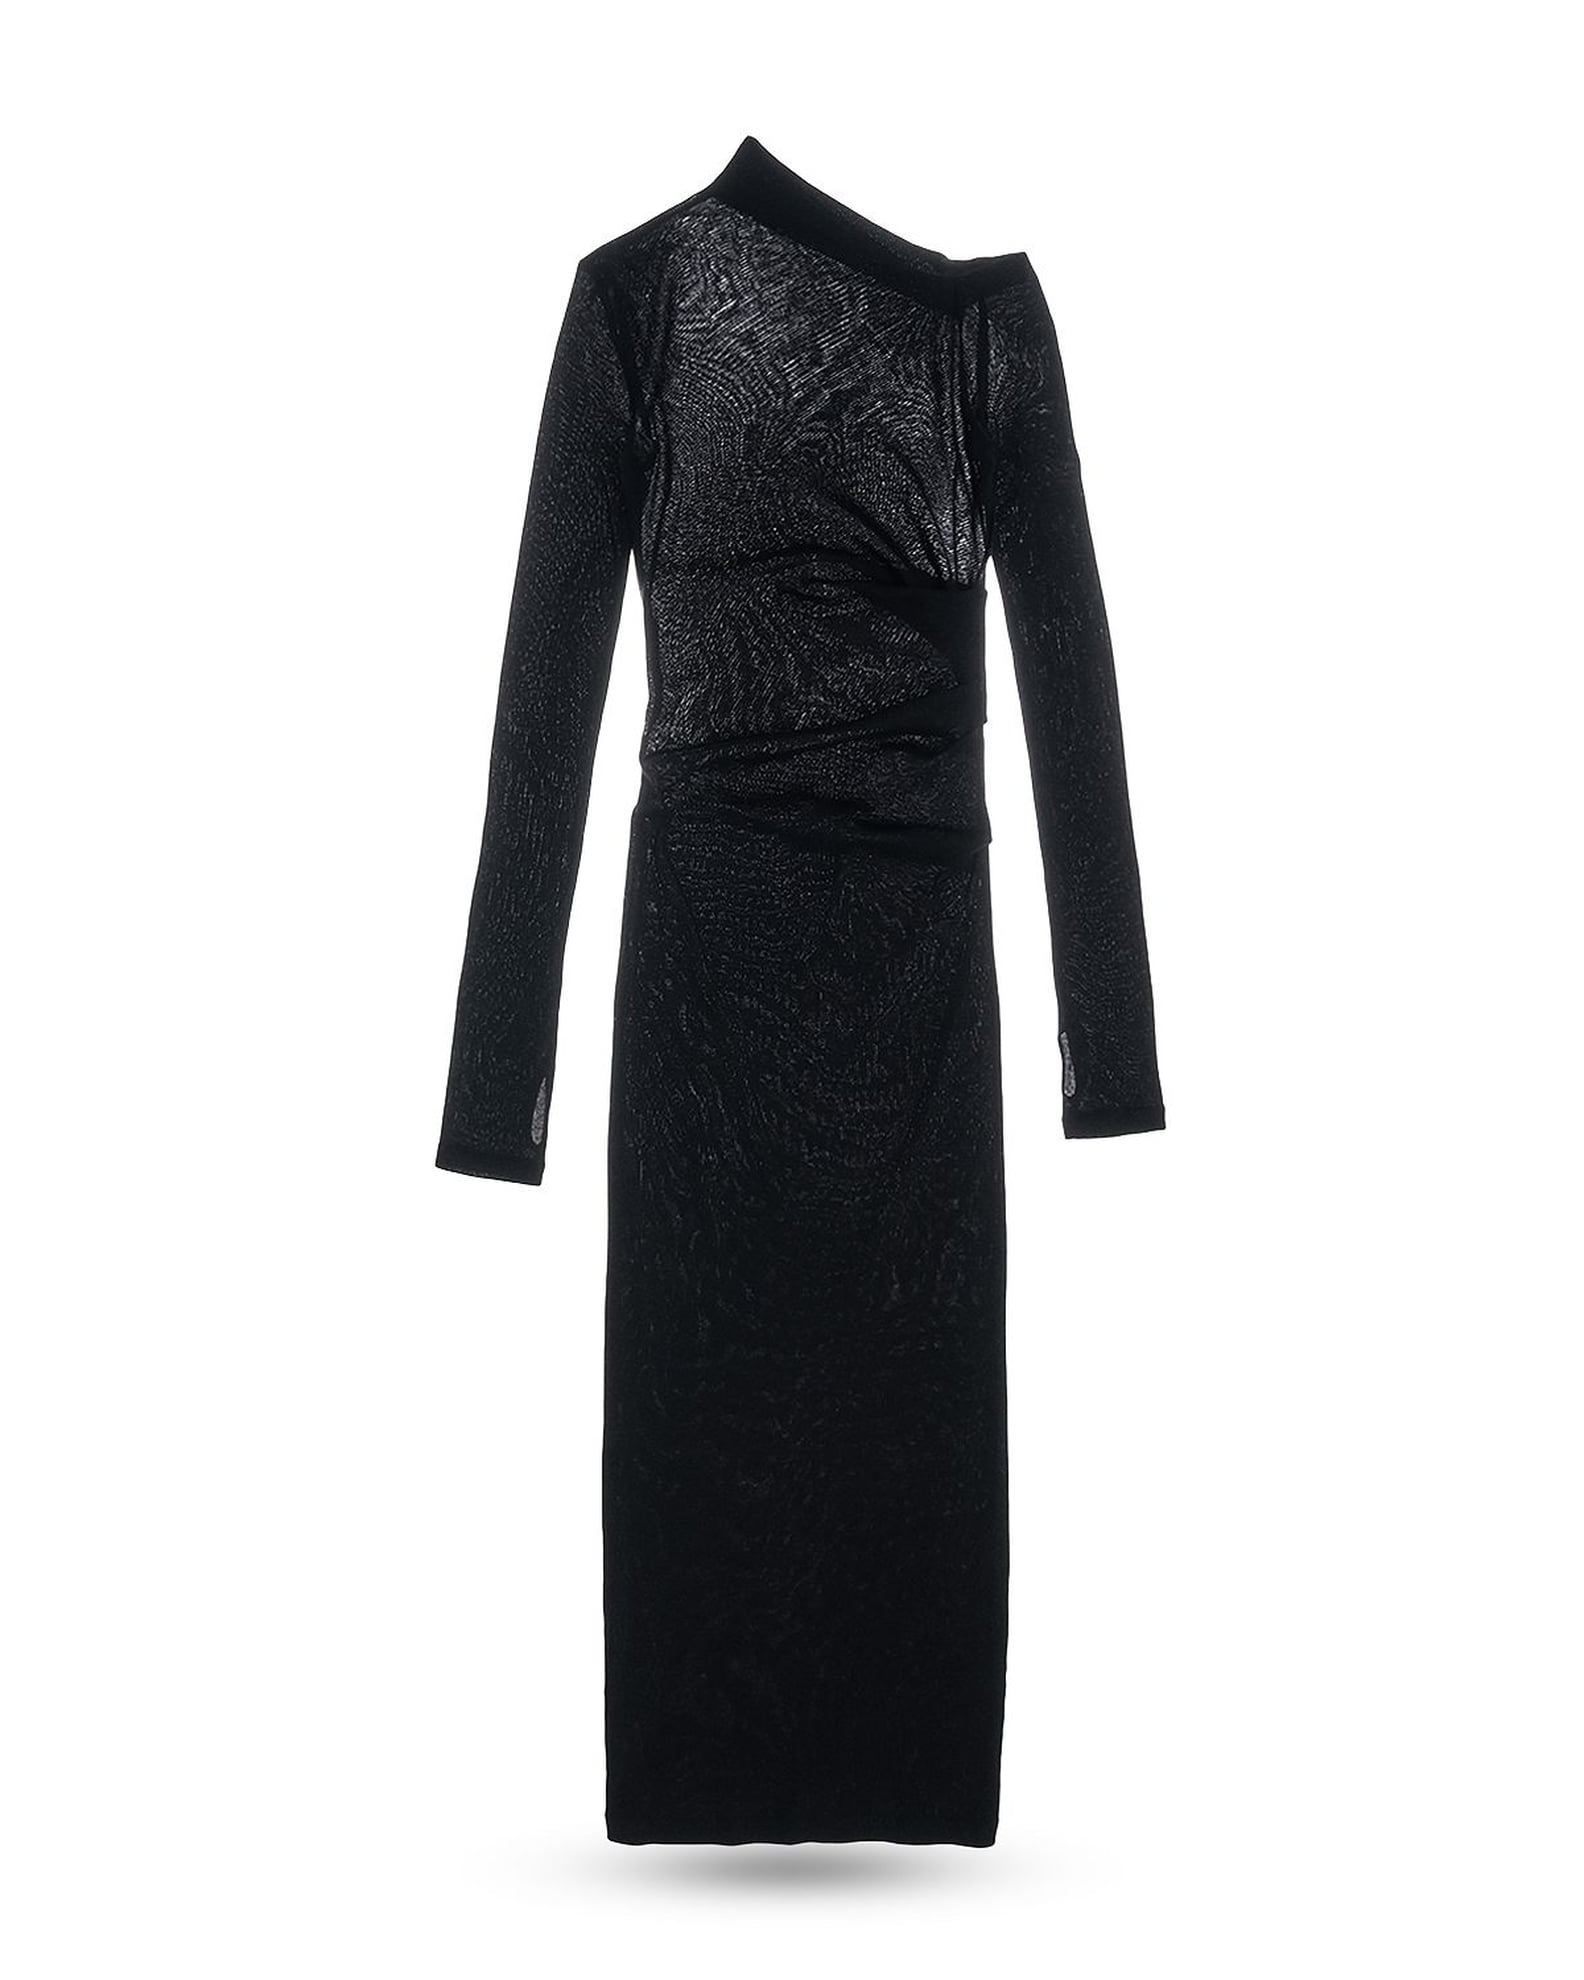 Anya Taylor-Joy's Sheer Black Knit Dress at The Menu Party | POPSUGAR ...